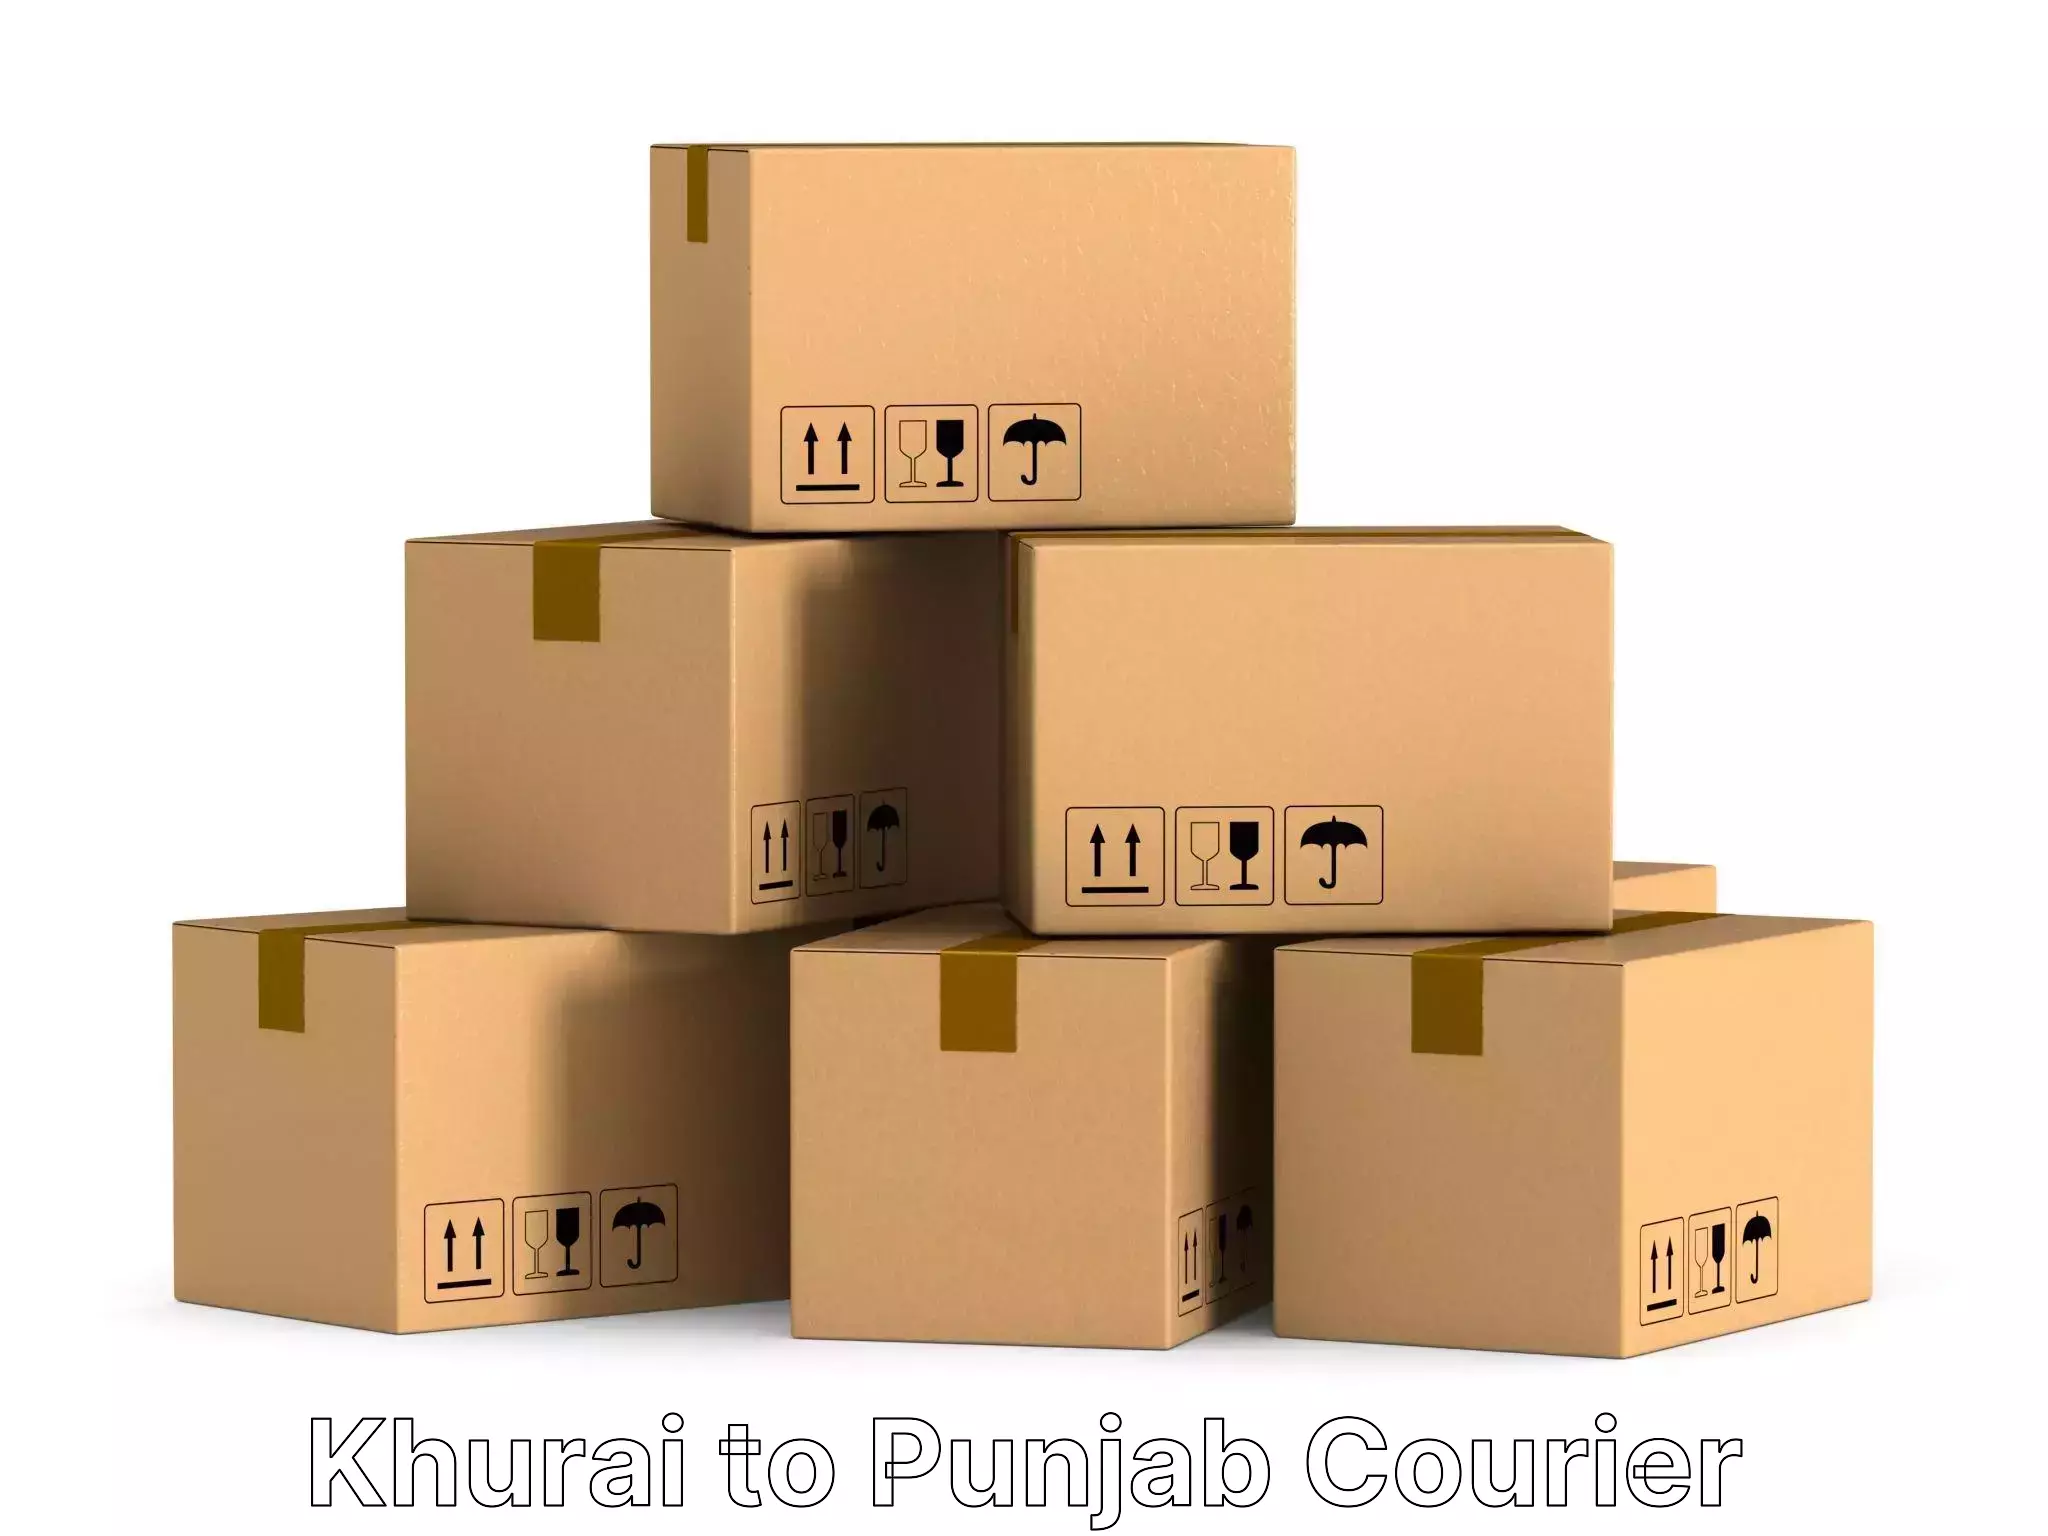 Efficient furniture transport Khurai to Punjab